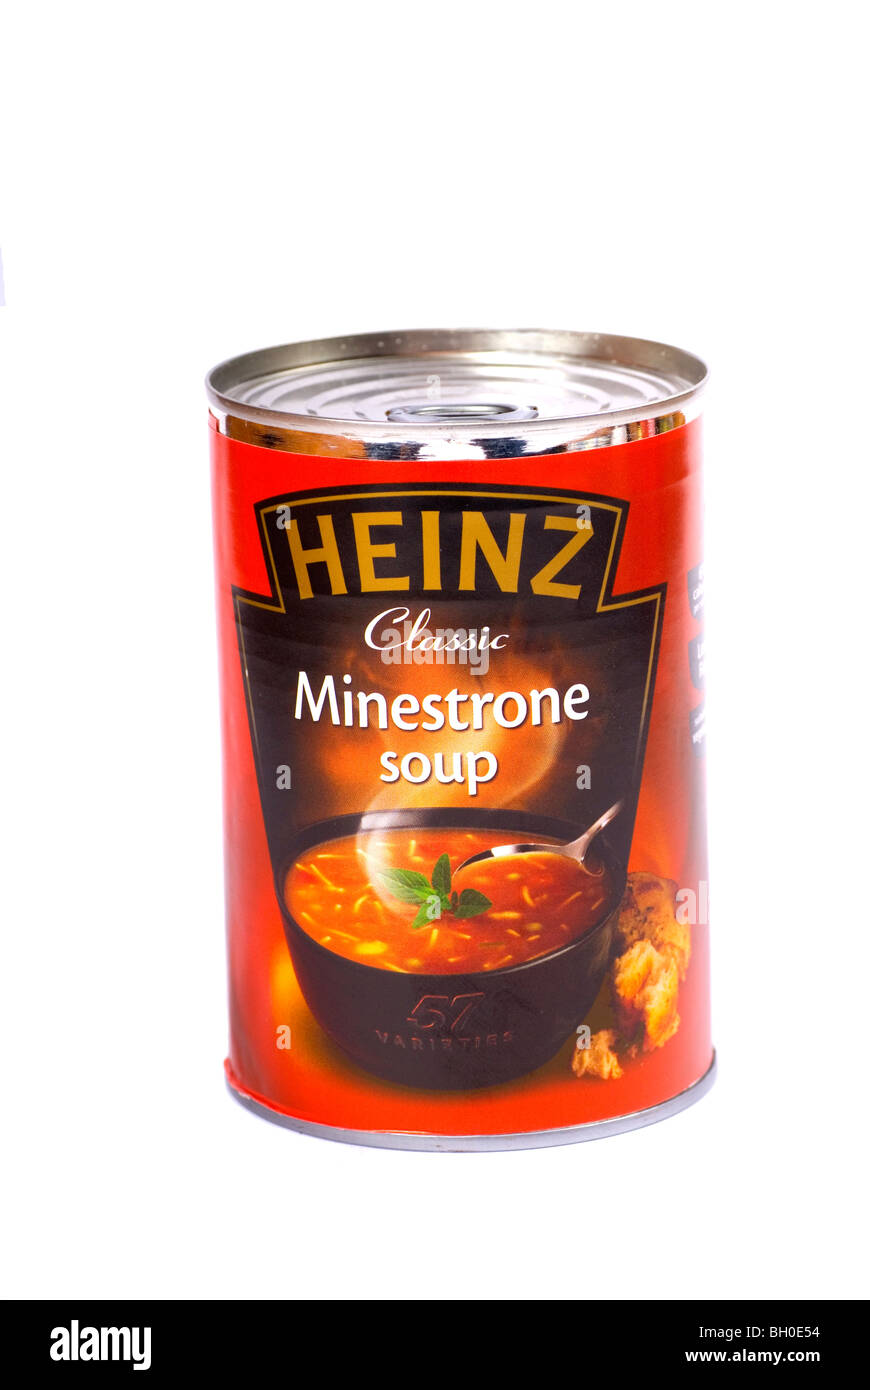 Ein Bild von einer Dose Heinz Minestrone Suppe Schnitt Stockfoto